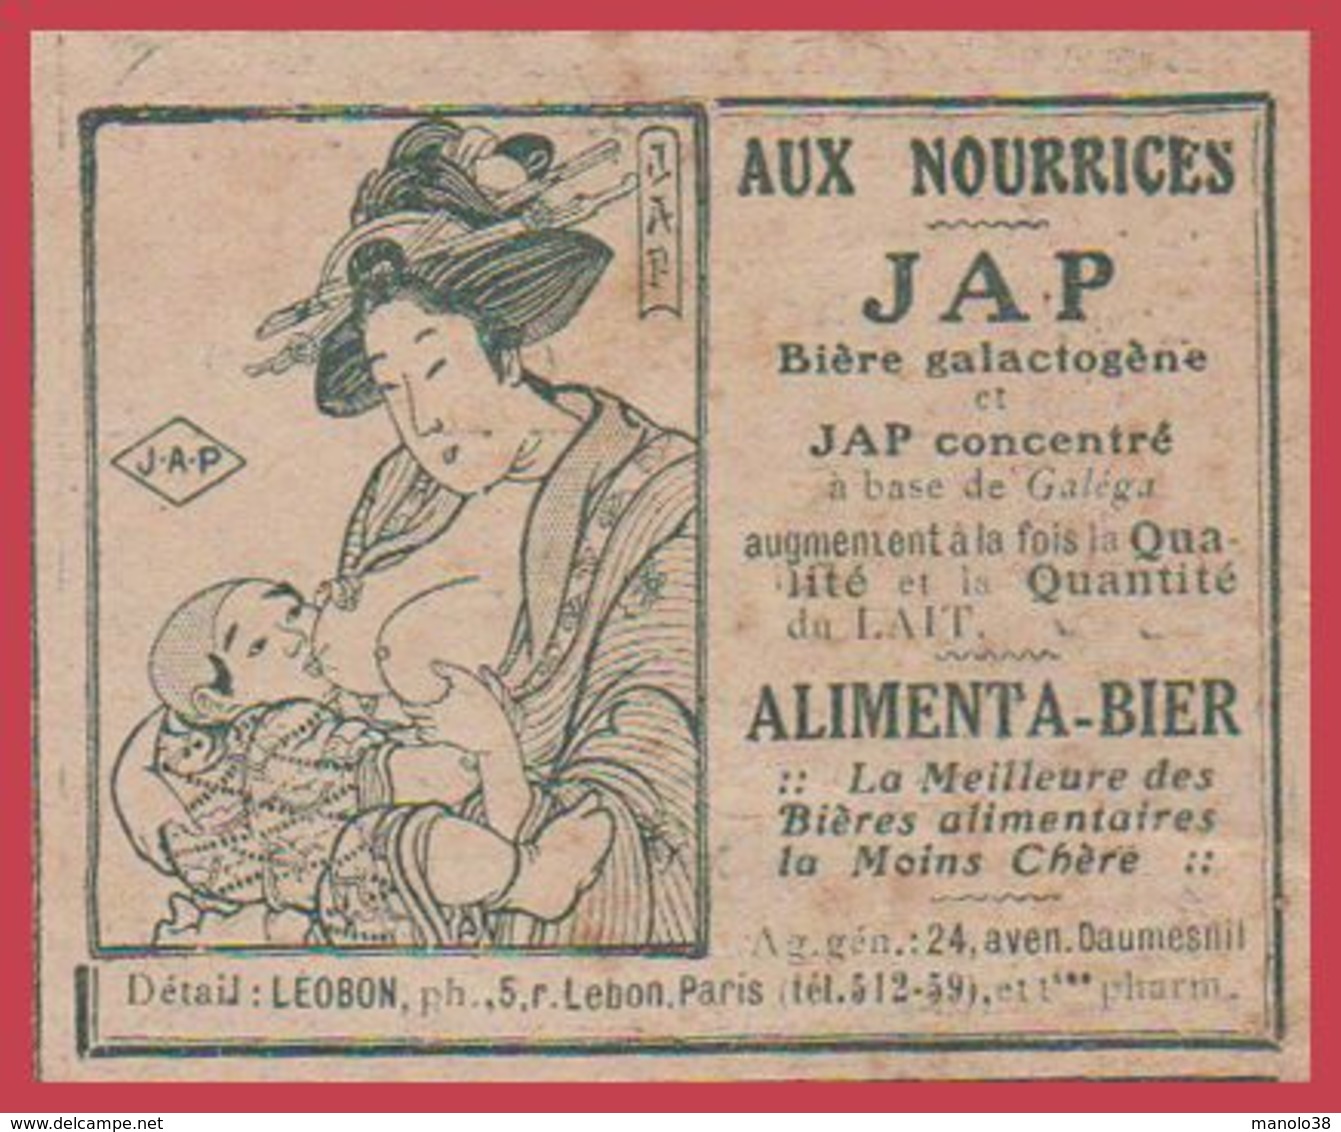 Aux Nourrices JAP. Bière Galactogène Et Jap Concentré. Alimenta Bier. Japon. 1914. - Advertising